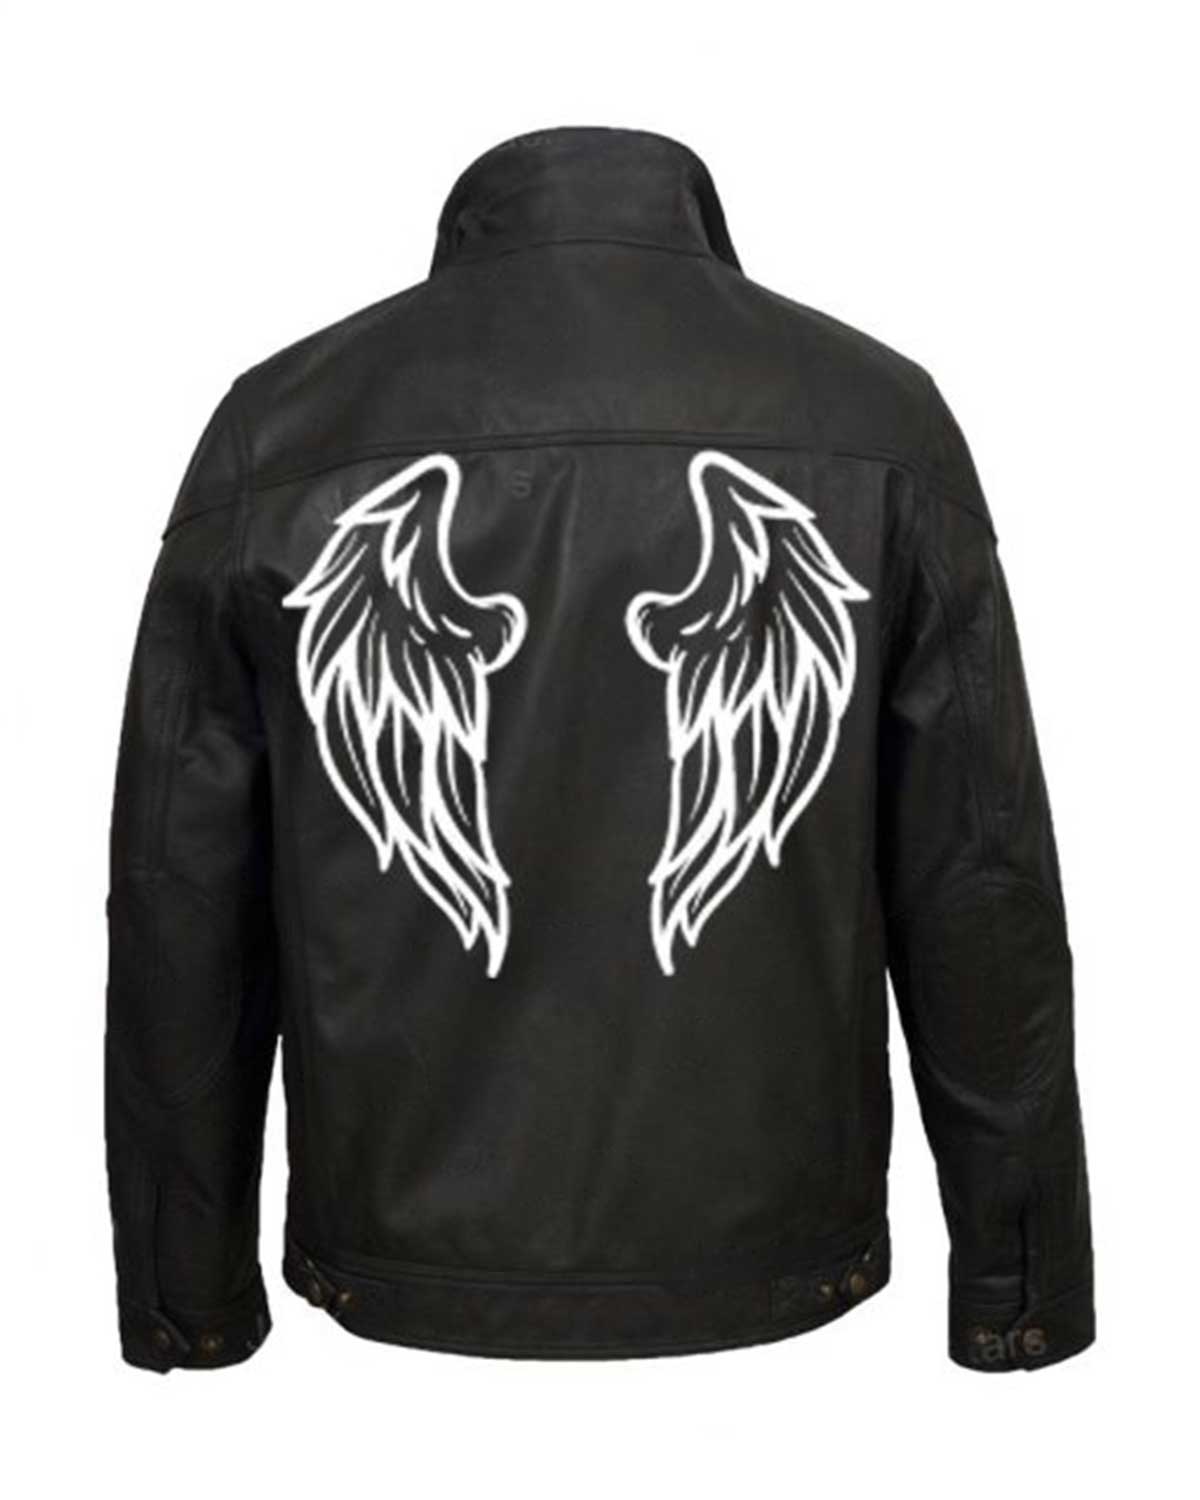 MotorCycleJackets Halloween Black Wings Printed Leather Jacket